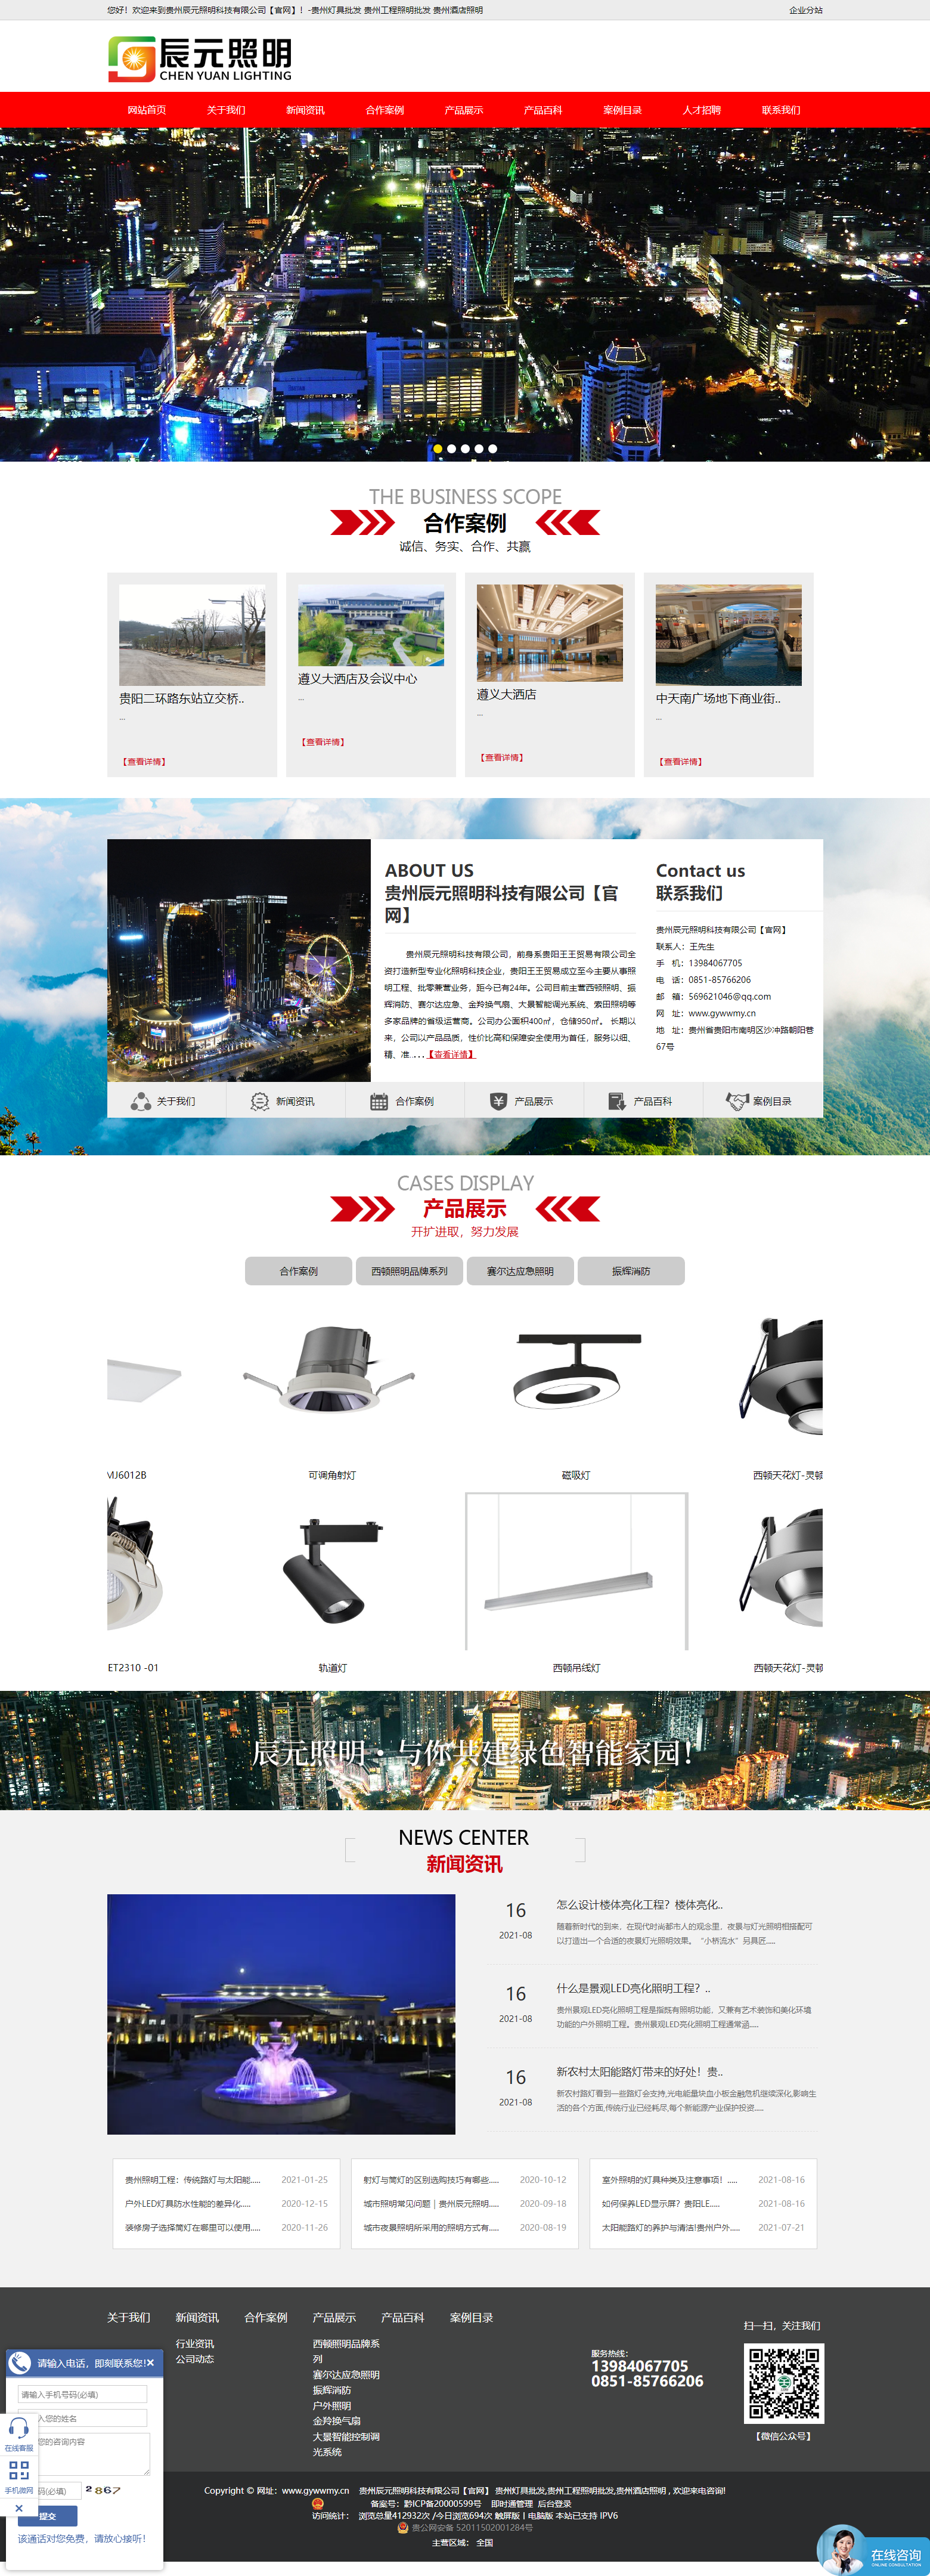 贵州辰元照明科技有限公司网站案例